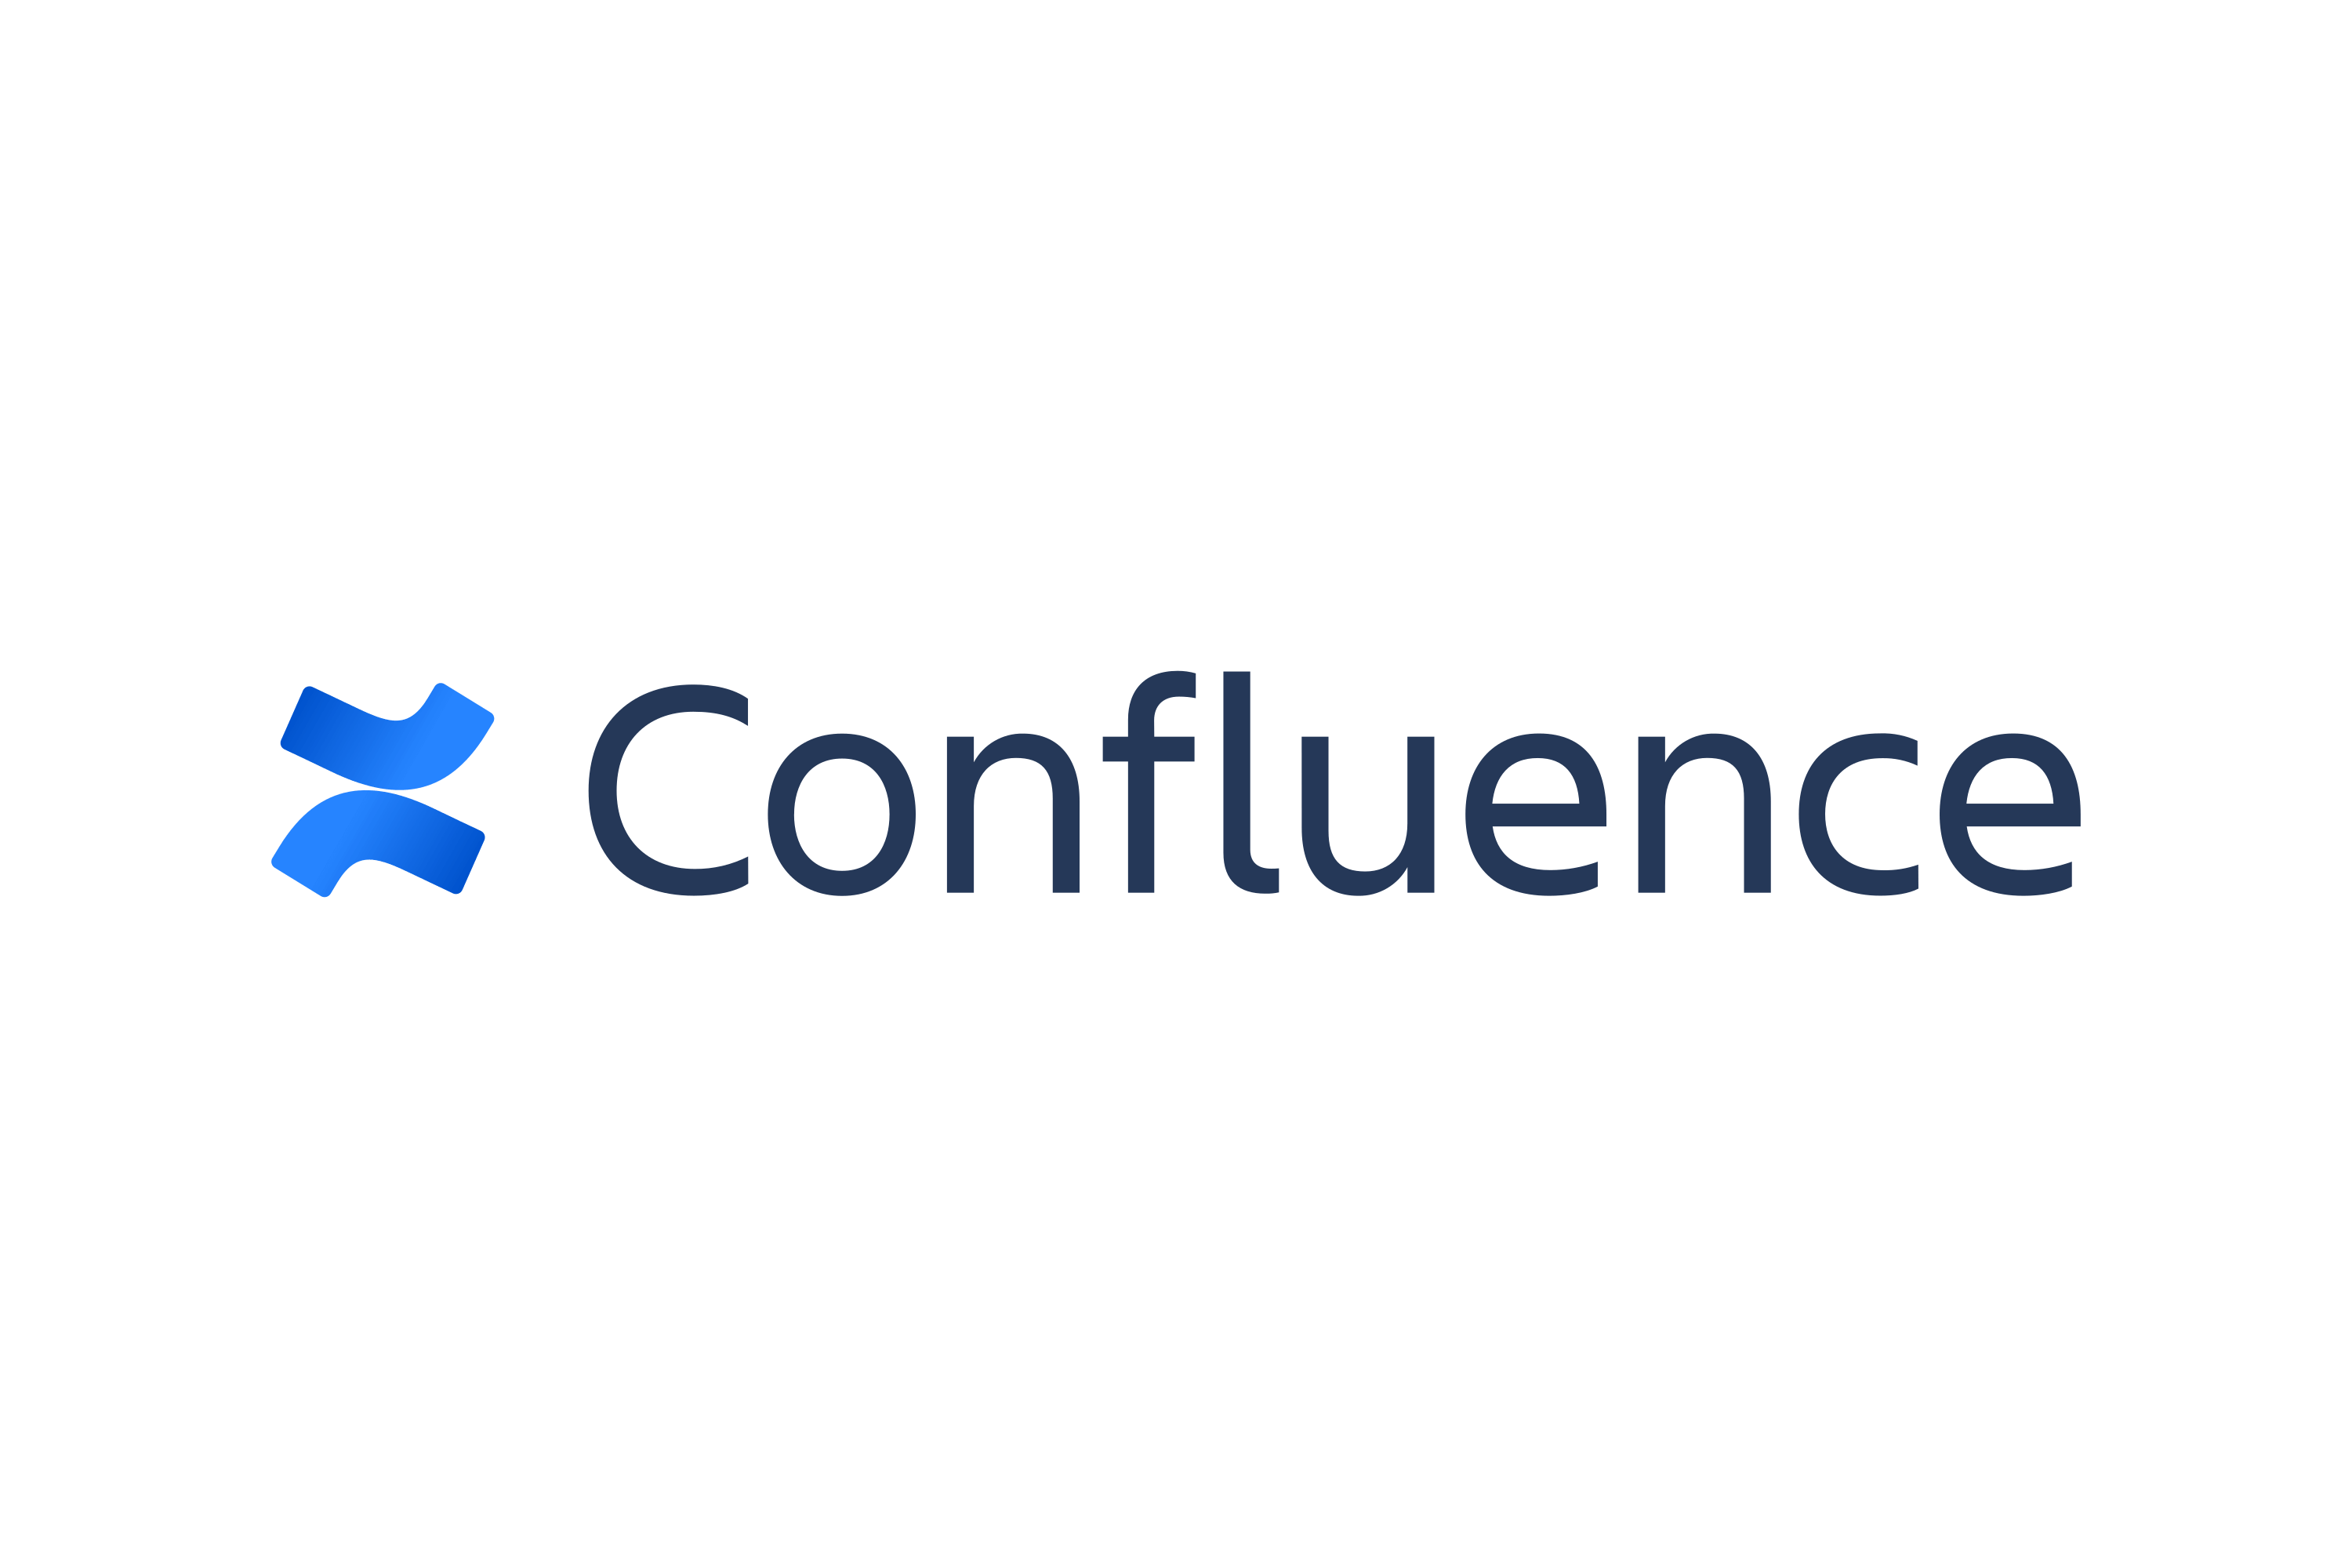 Logo Confluence